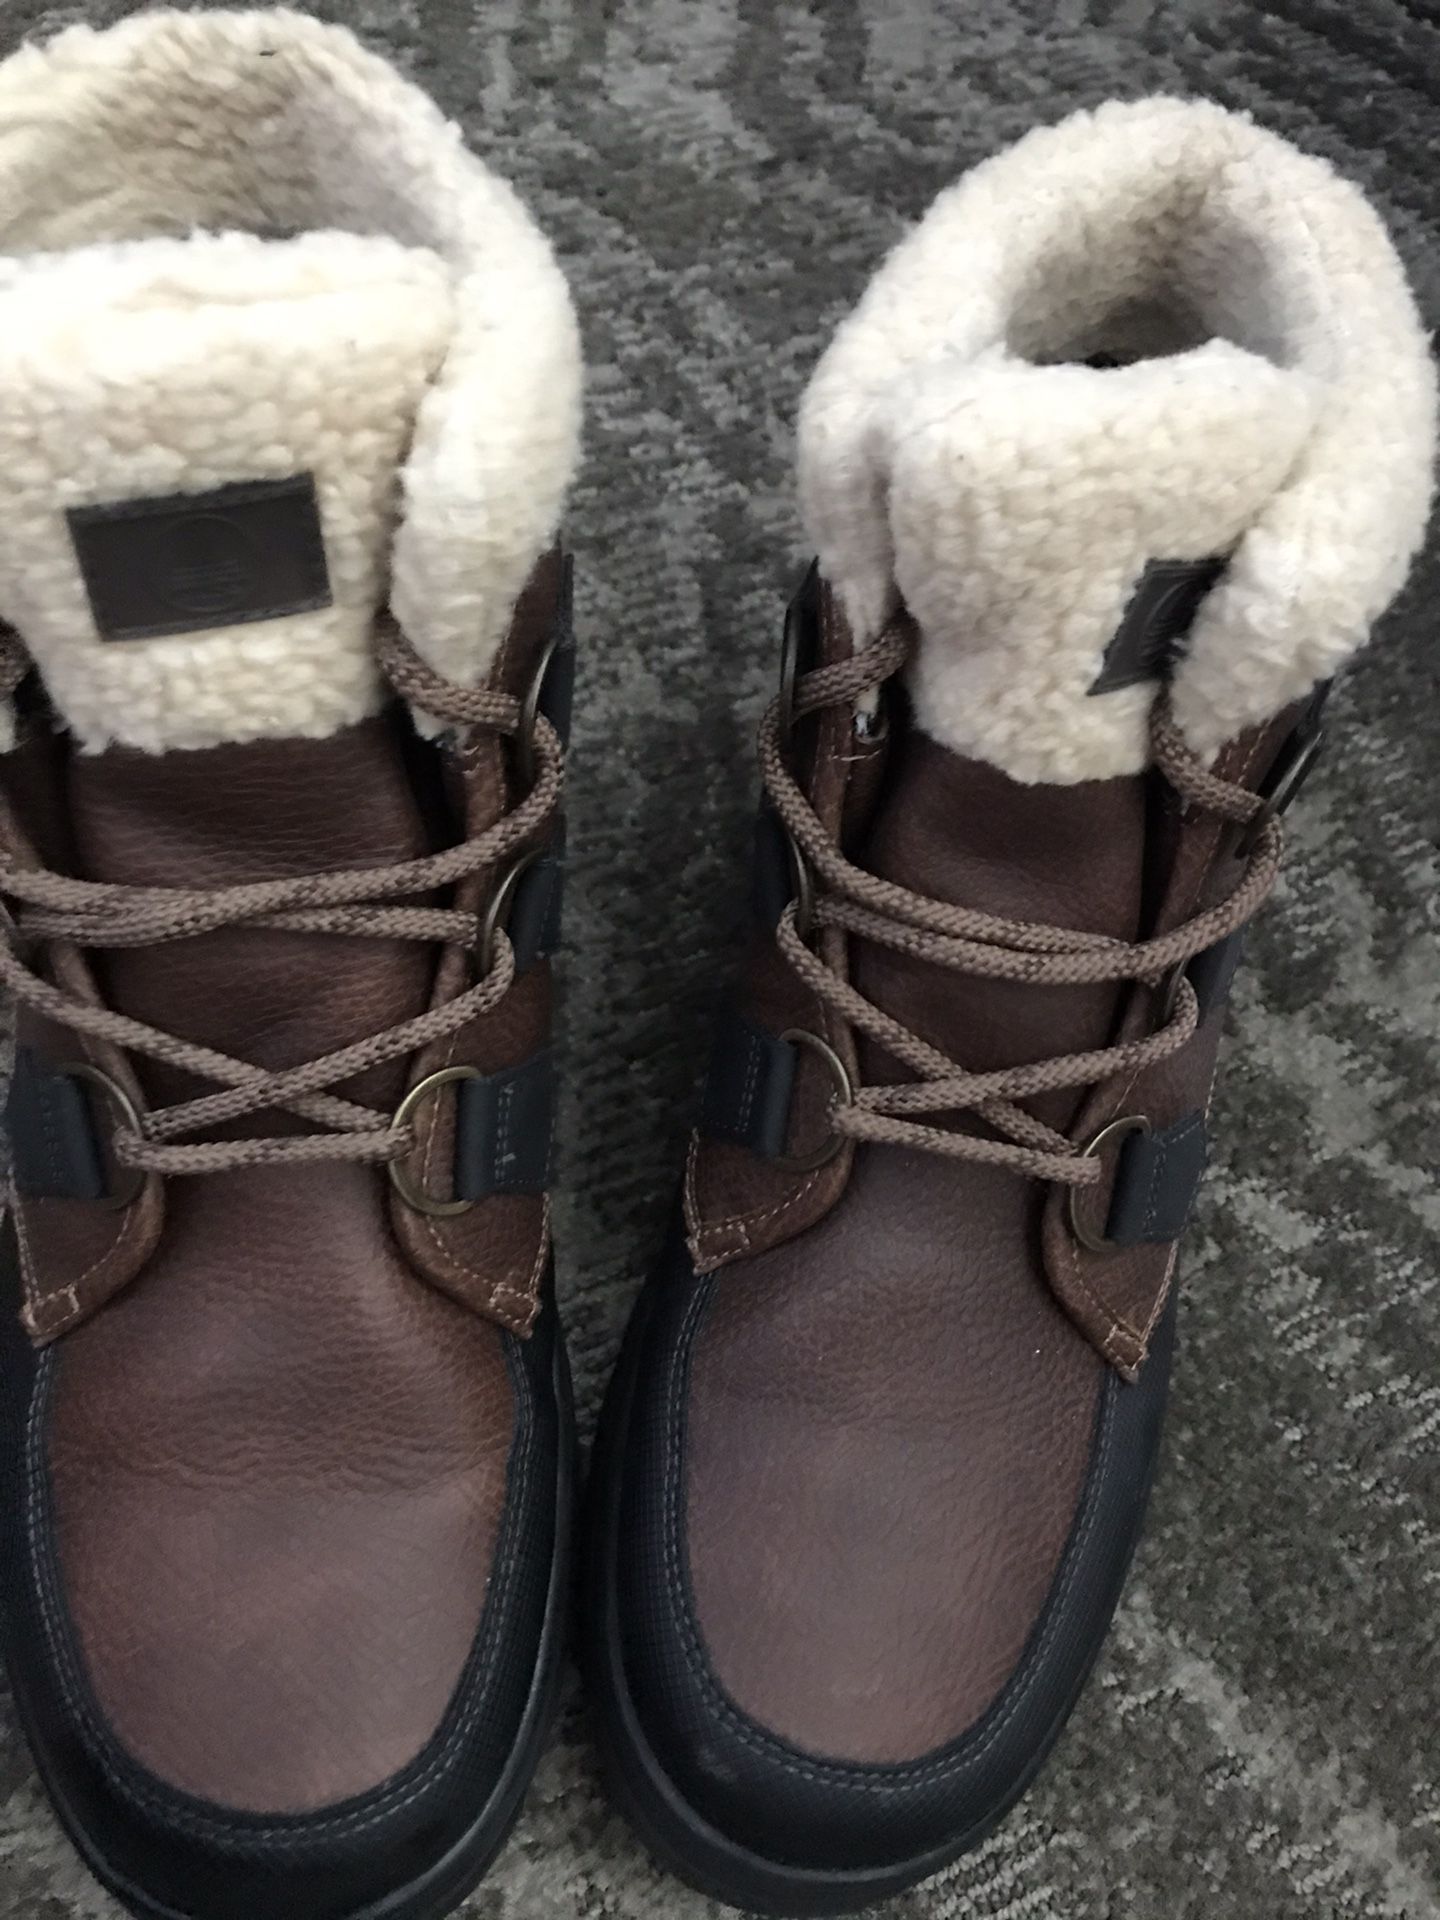 New Aldo winter boots